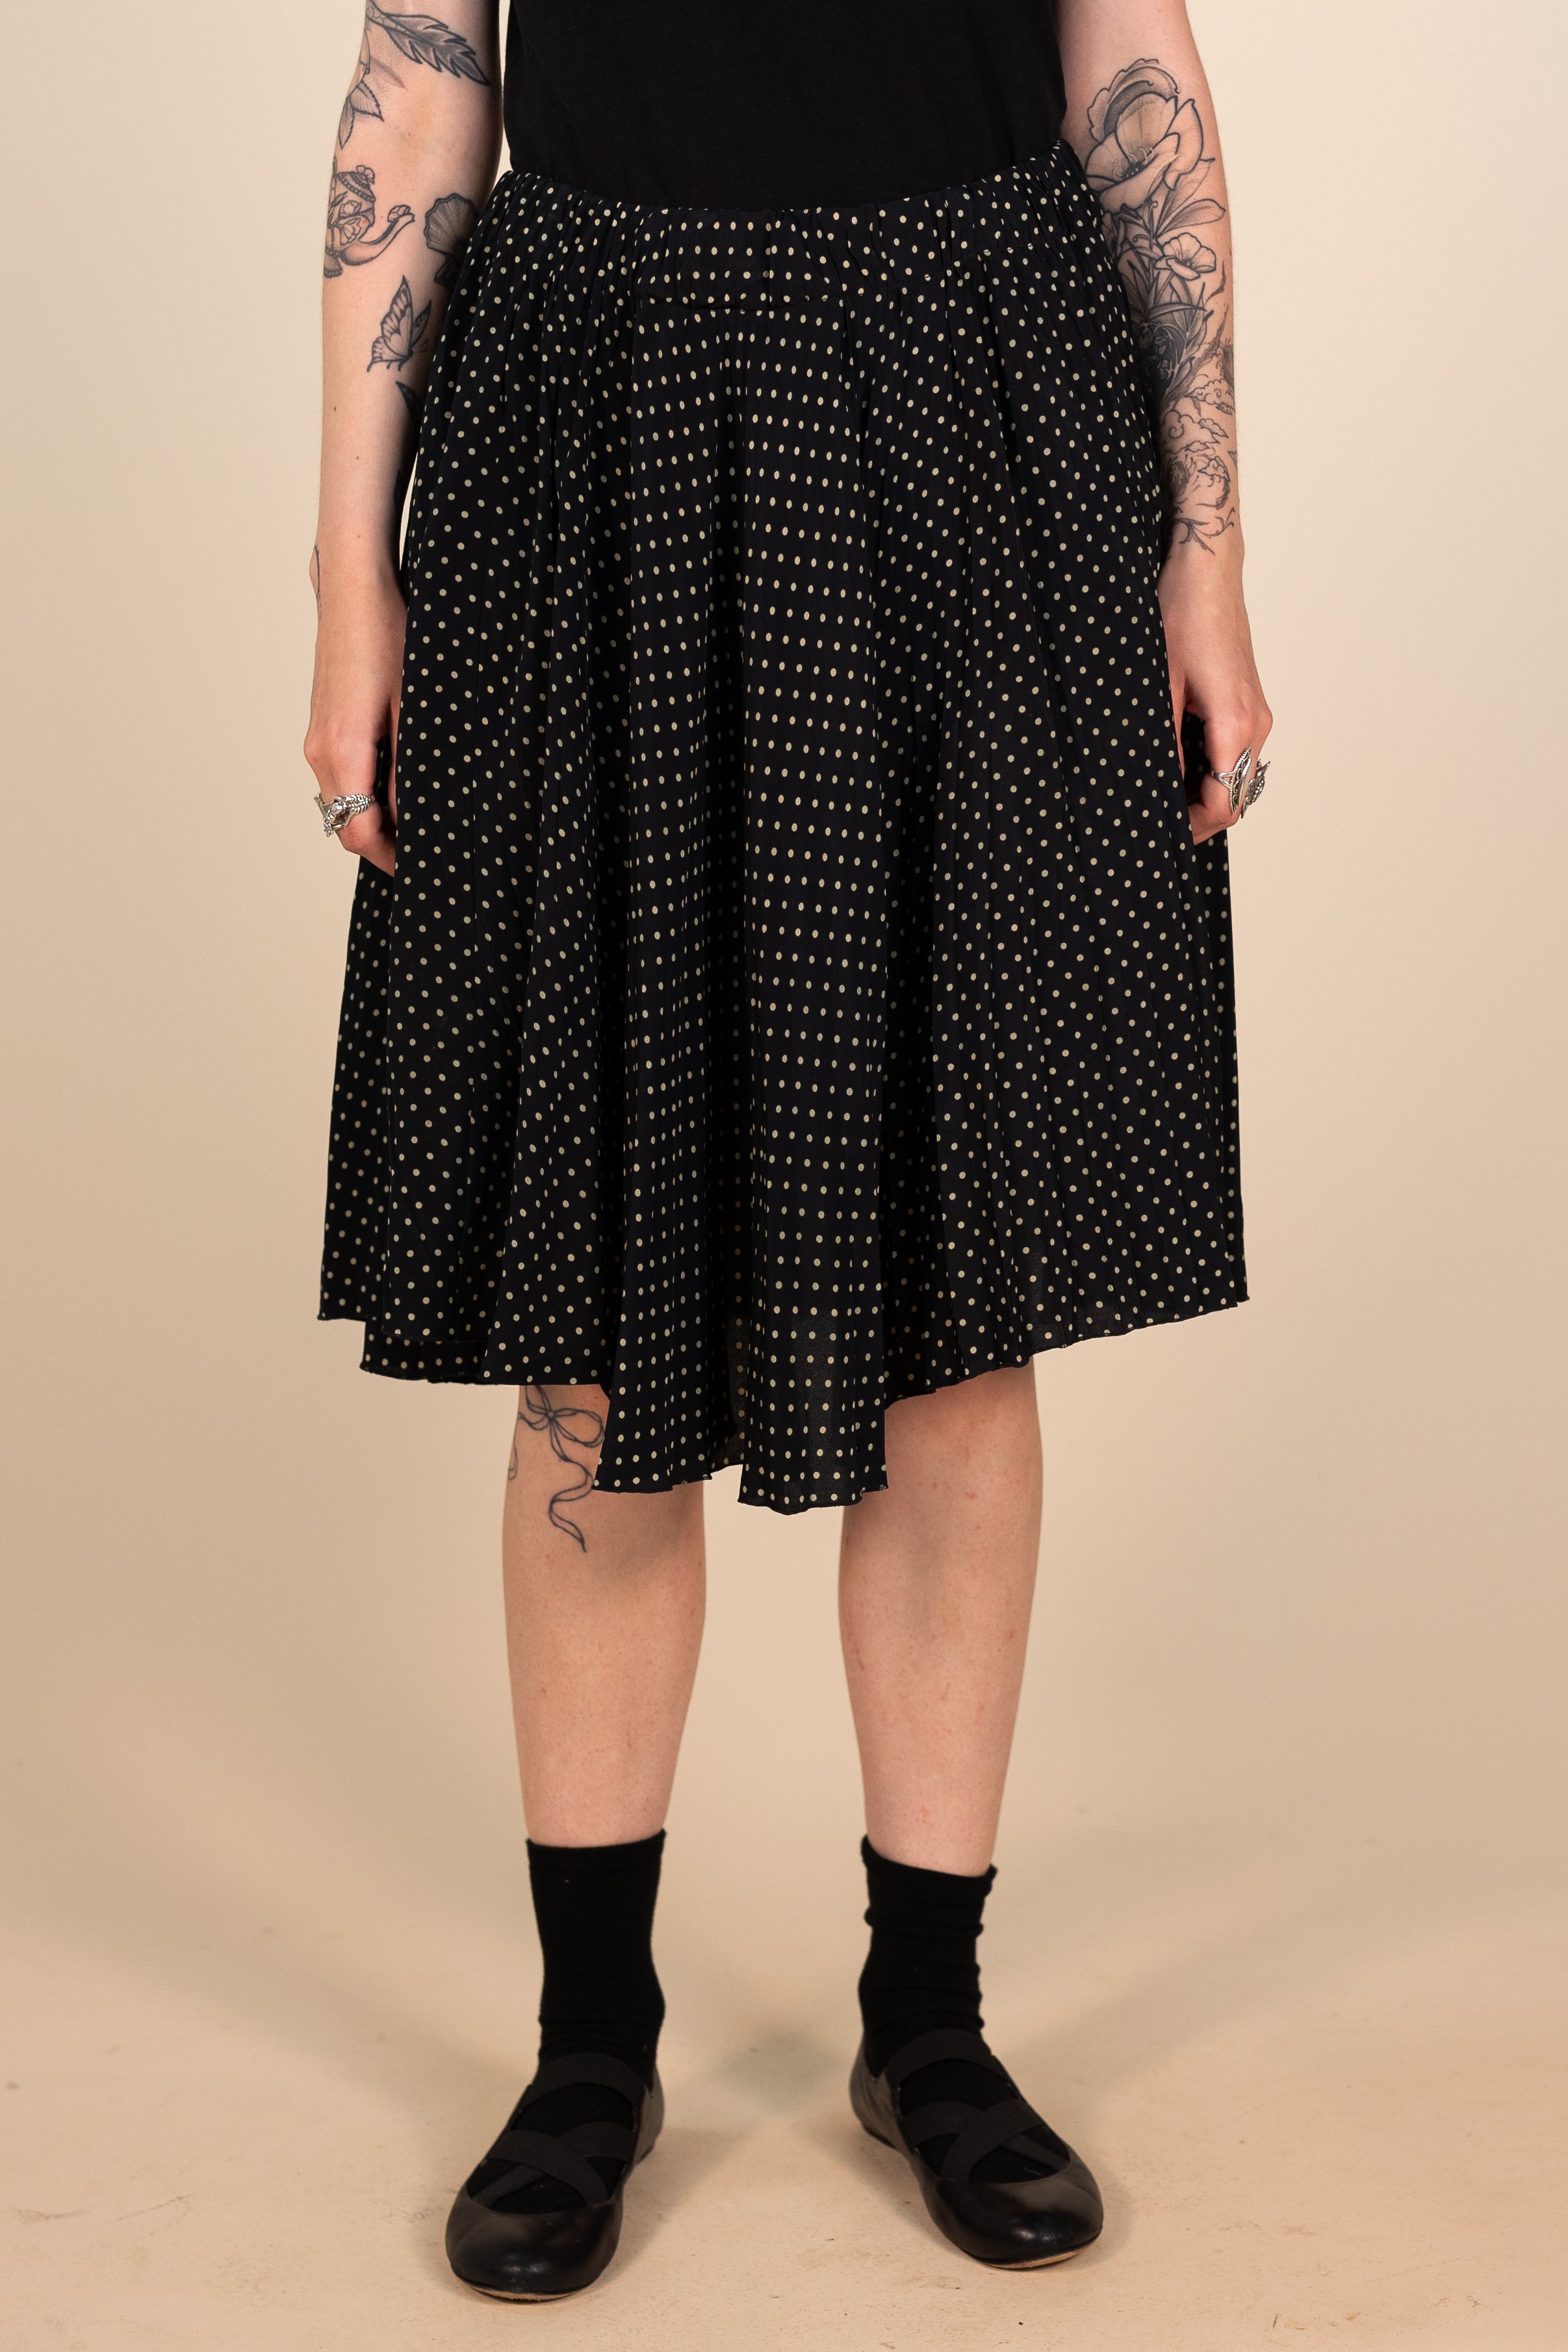 Skirt with Polkadot Print